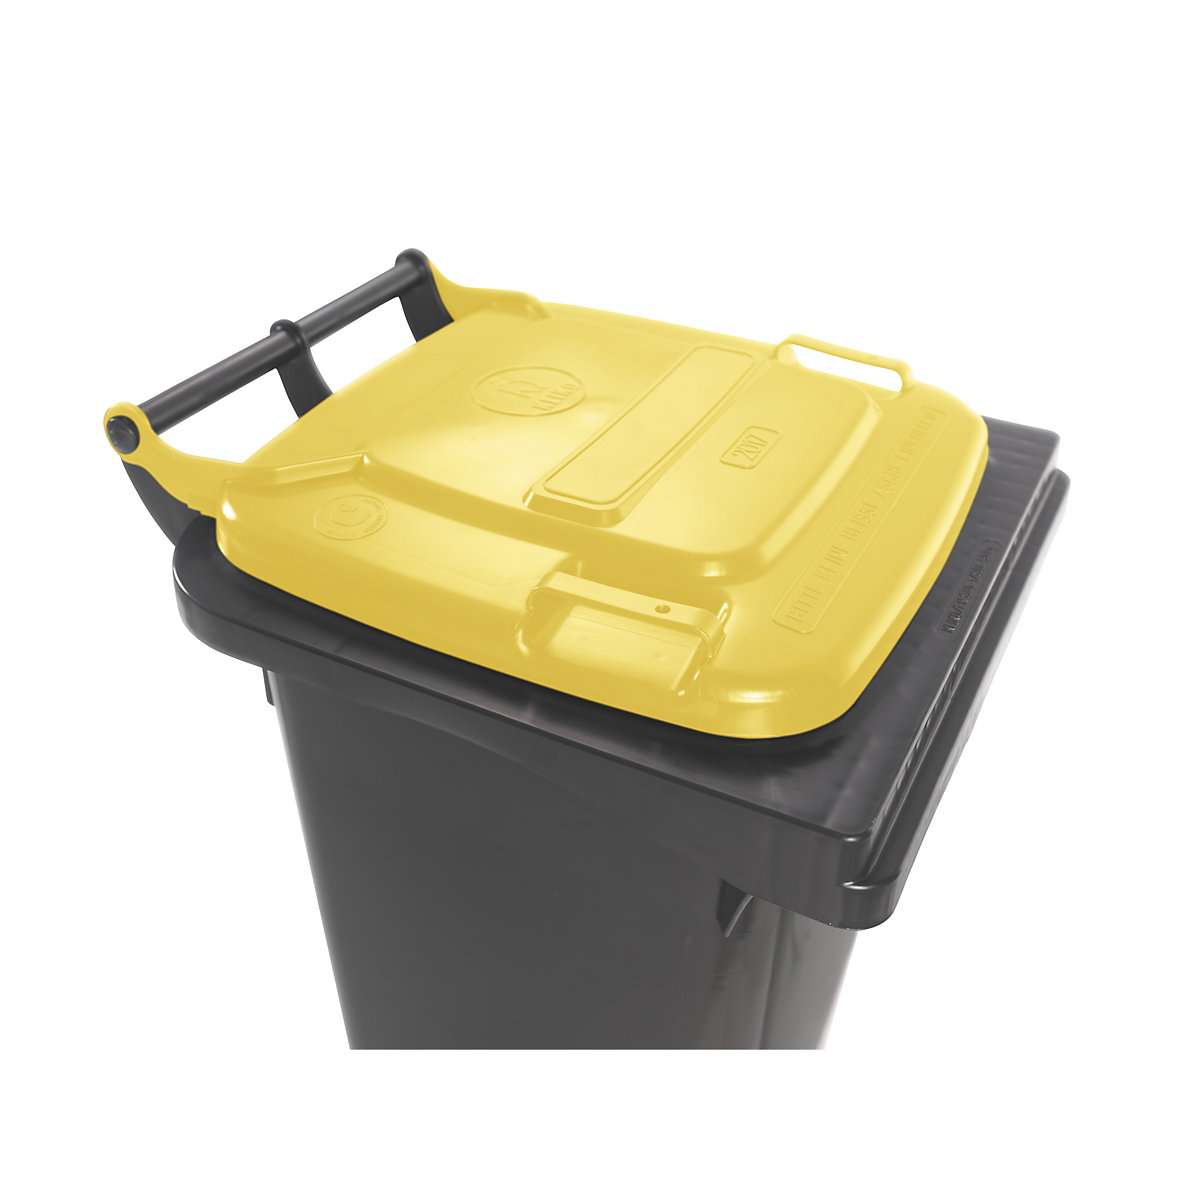 Contentor de lixo conforme a norma DIN EN 840 (Imagem do produto 7)